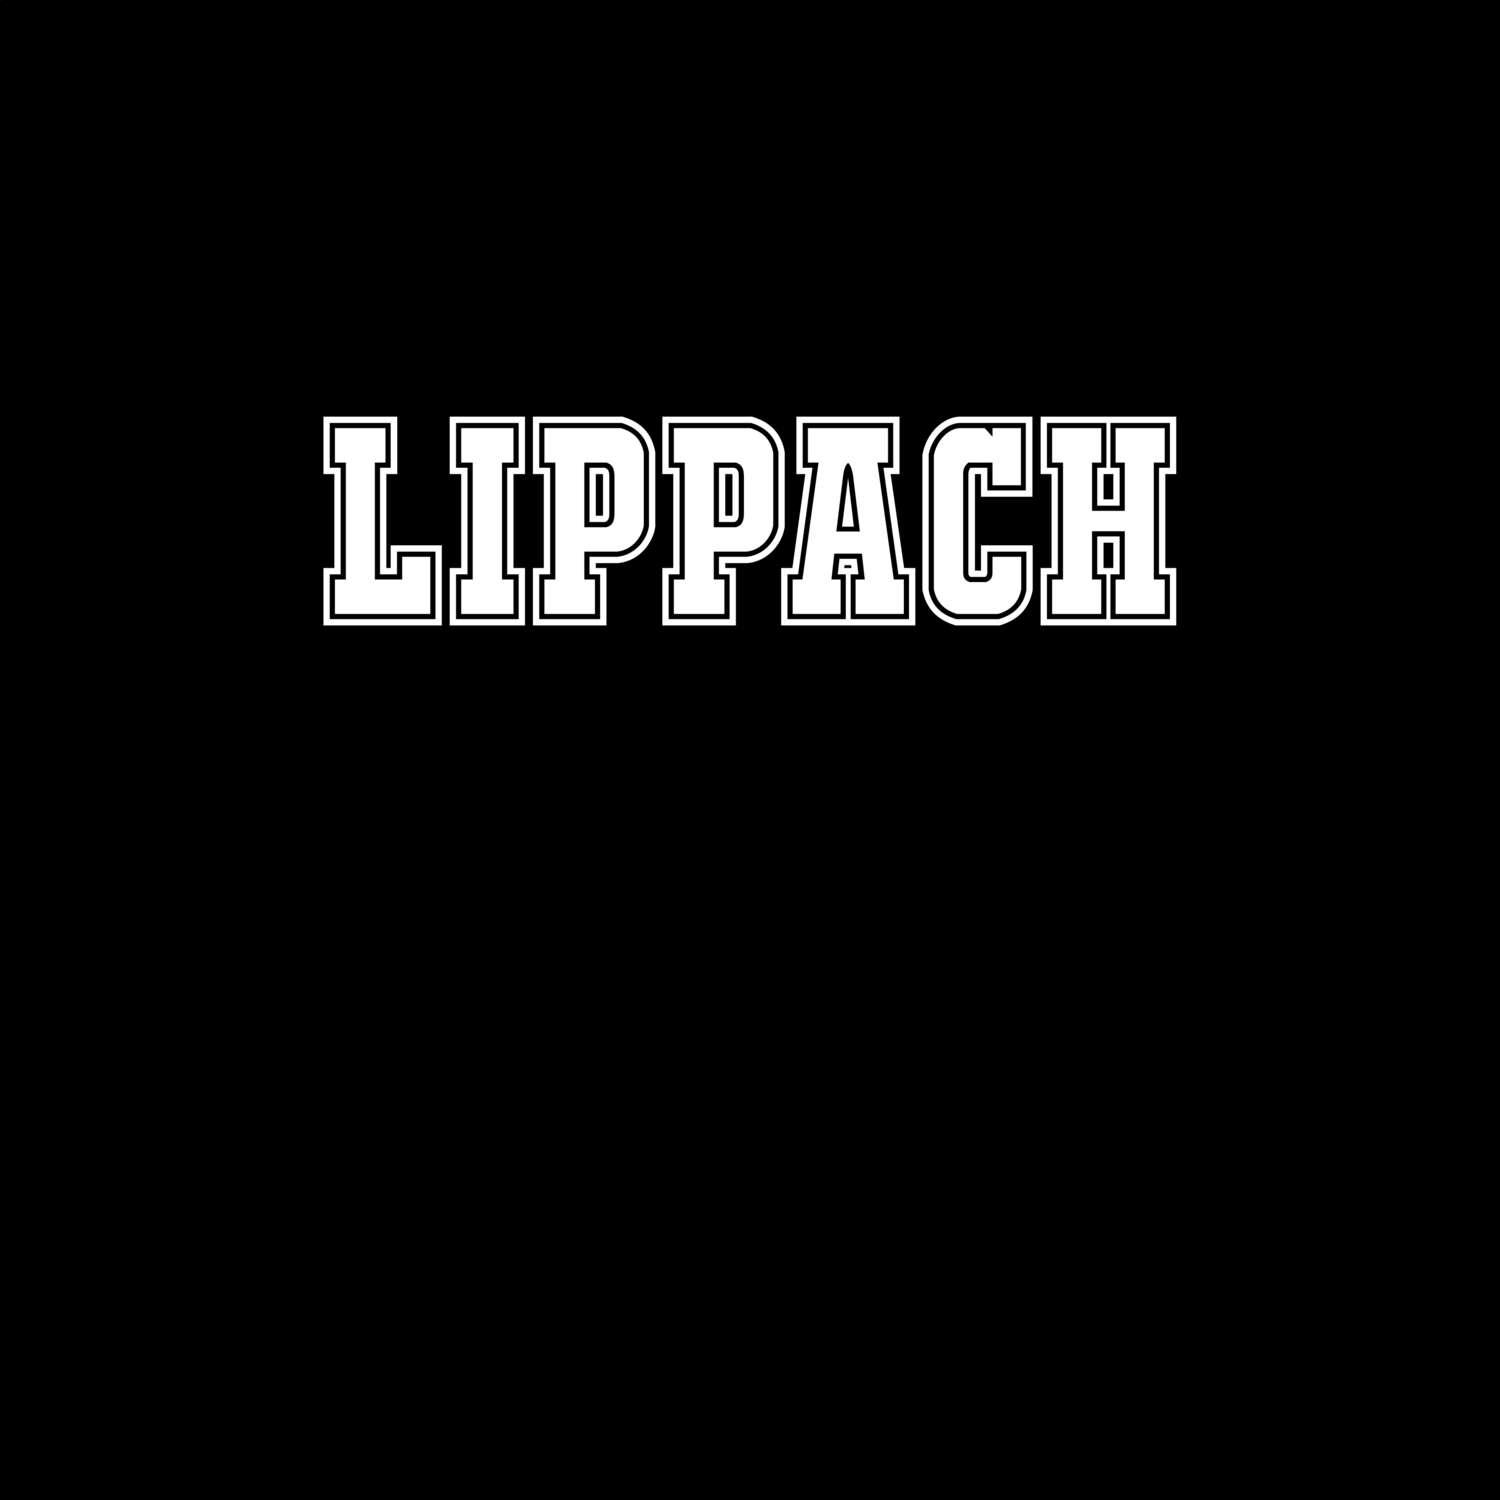 Lippach T-Shirt »Classic«